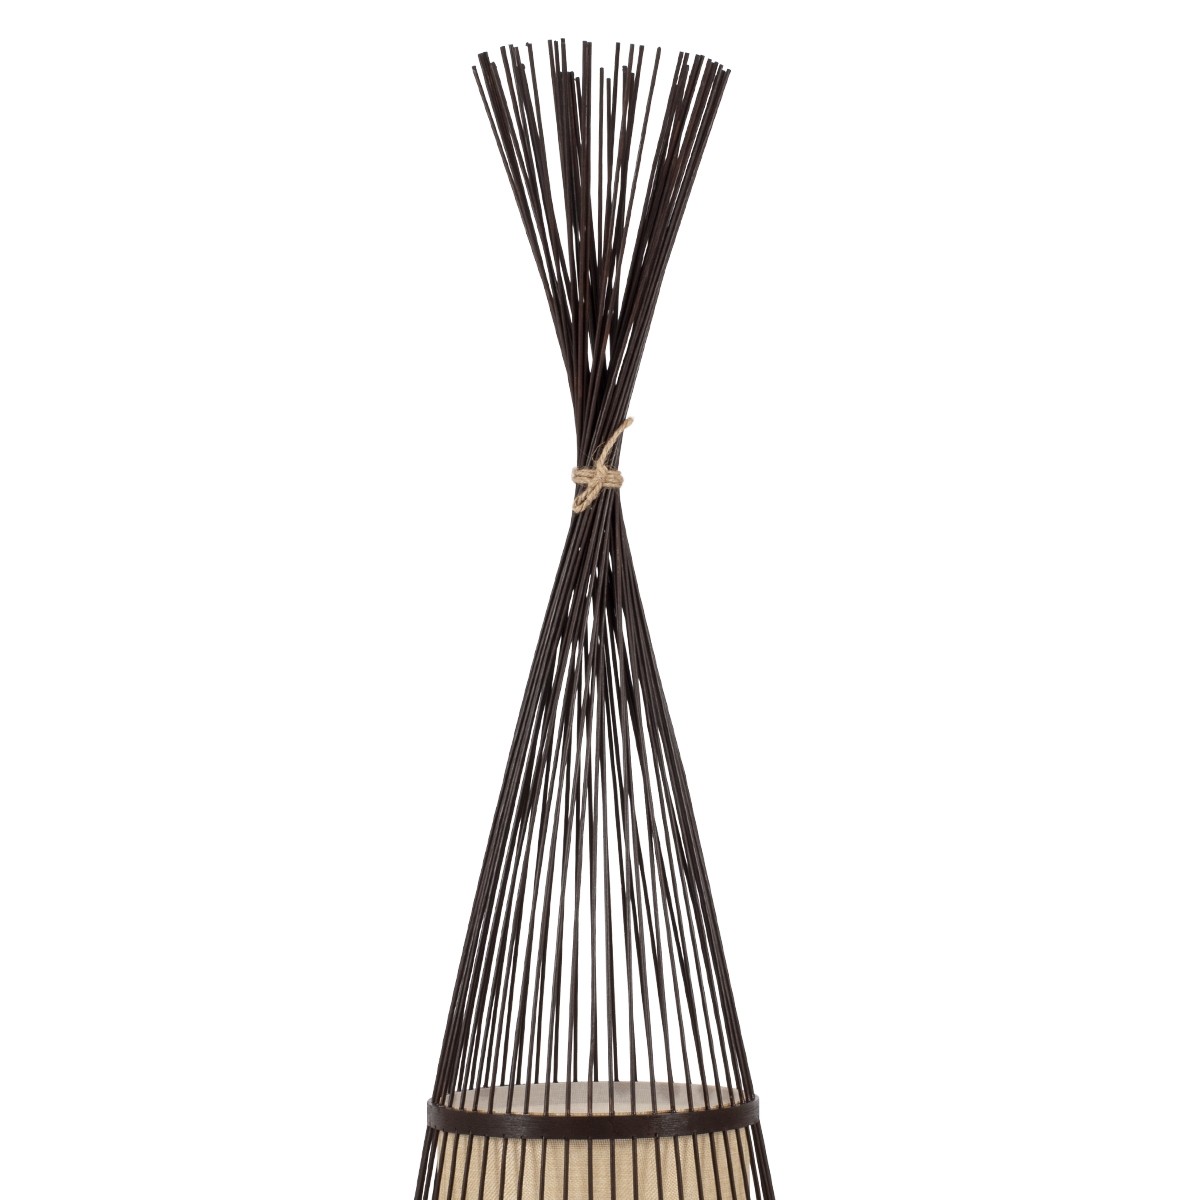 Δαπέδου Φωτιστικό AZORES Μονόφωτο Καφέ Ξύλινο Bamboo Πλέγμα Φ40 x Υ150cm 01756